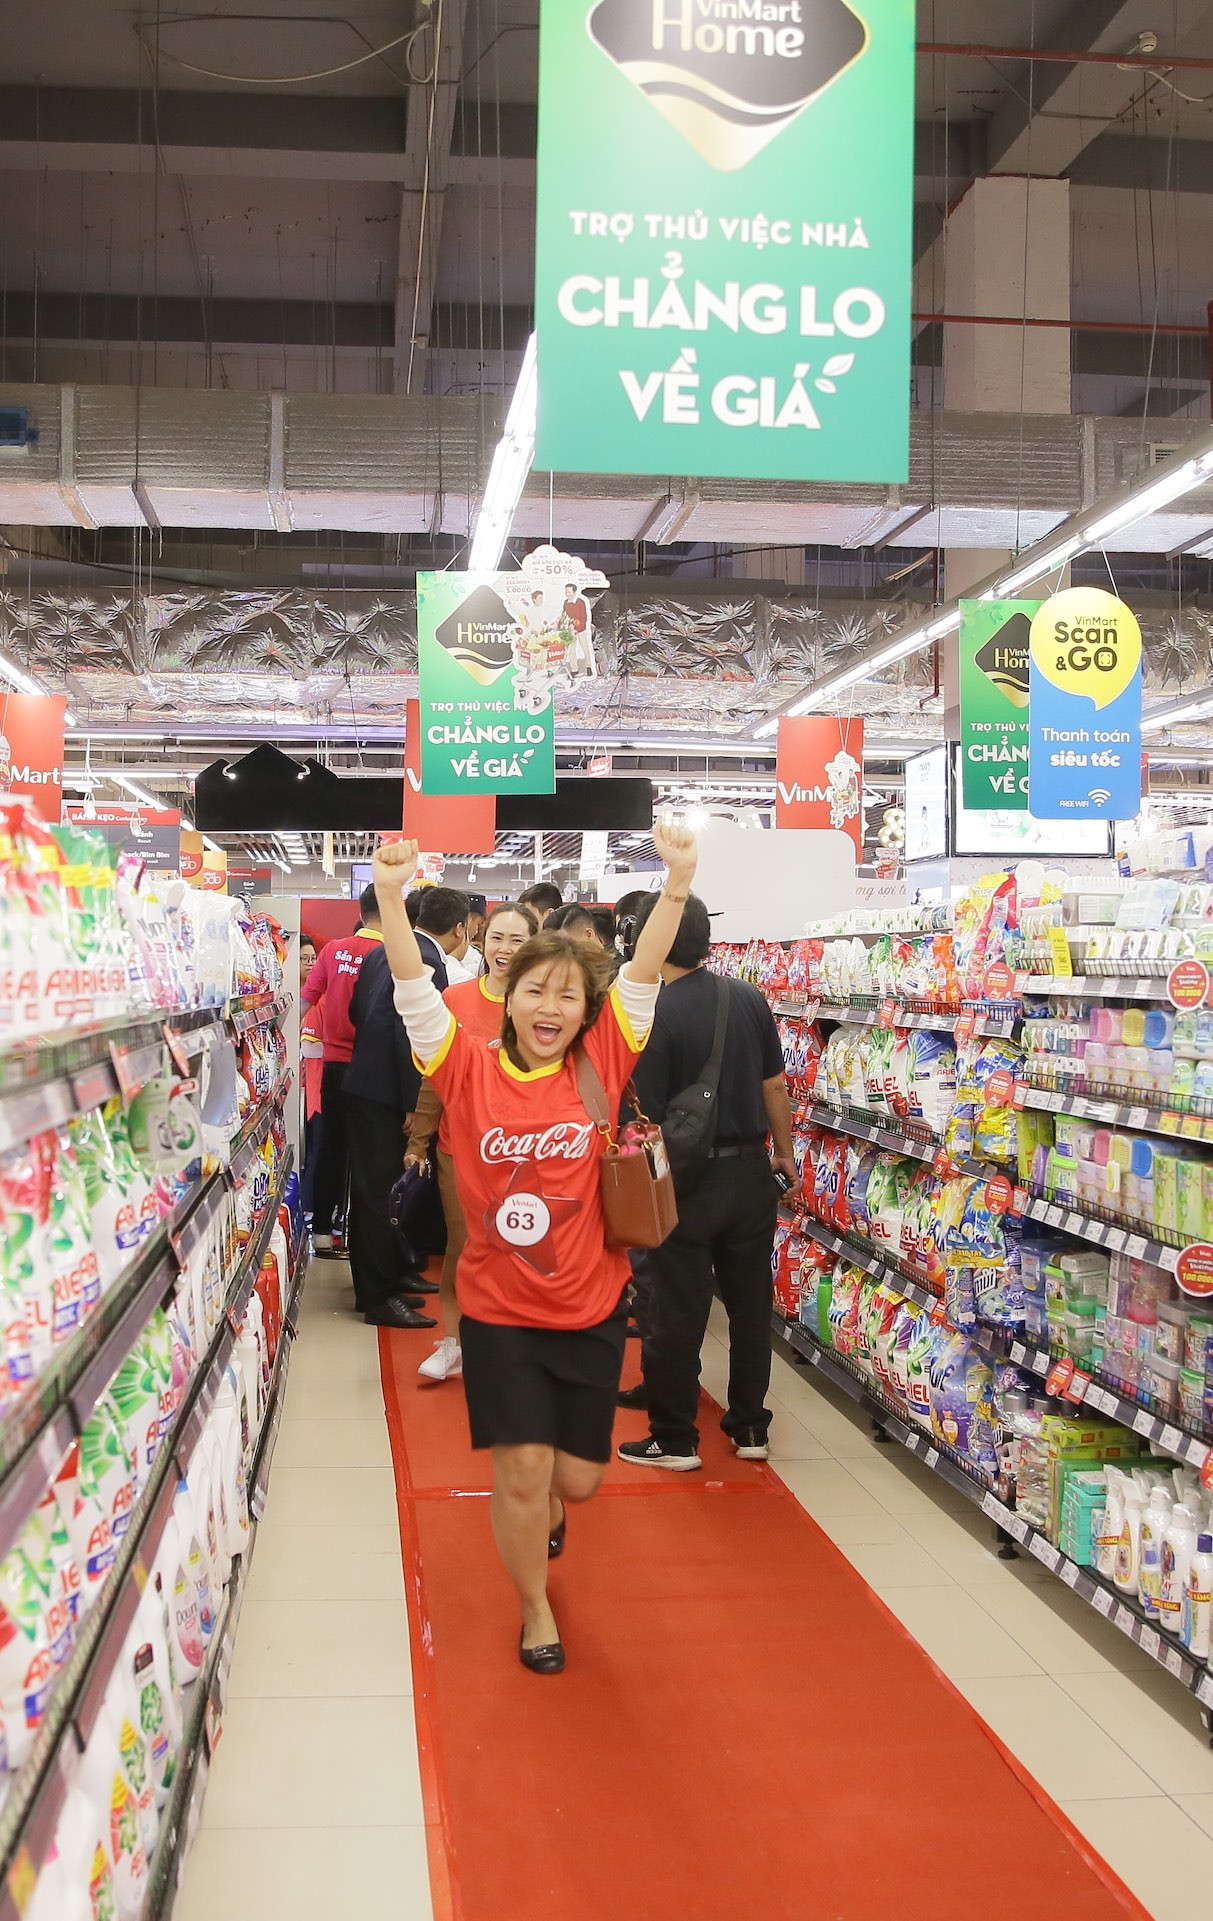 Khách hàng “phủ đỏ” VinMart, hào hứng tranh tài trong cuộc đua mua sắm